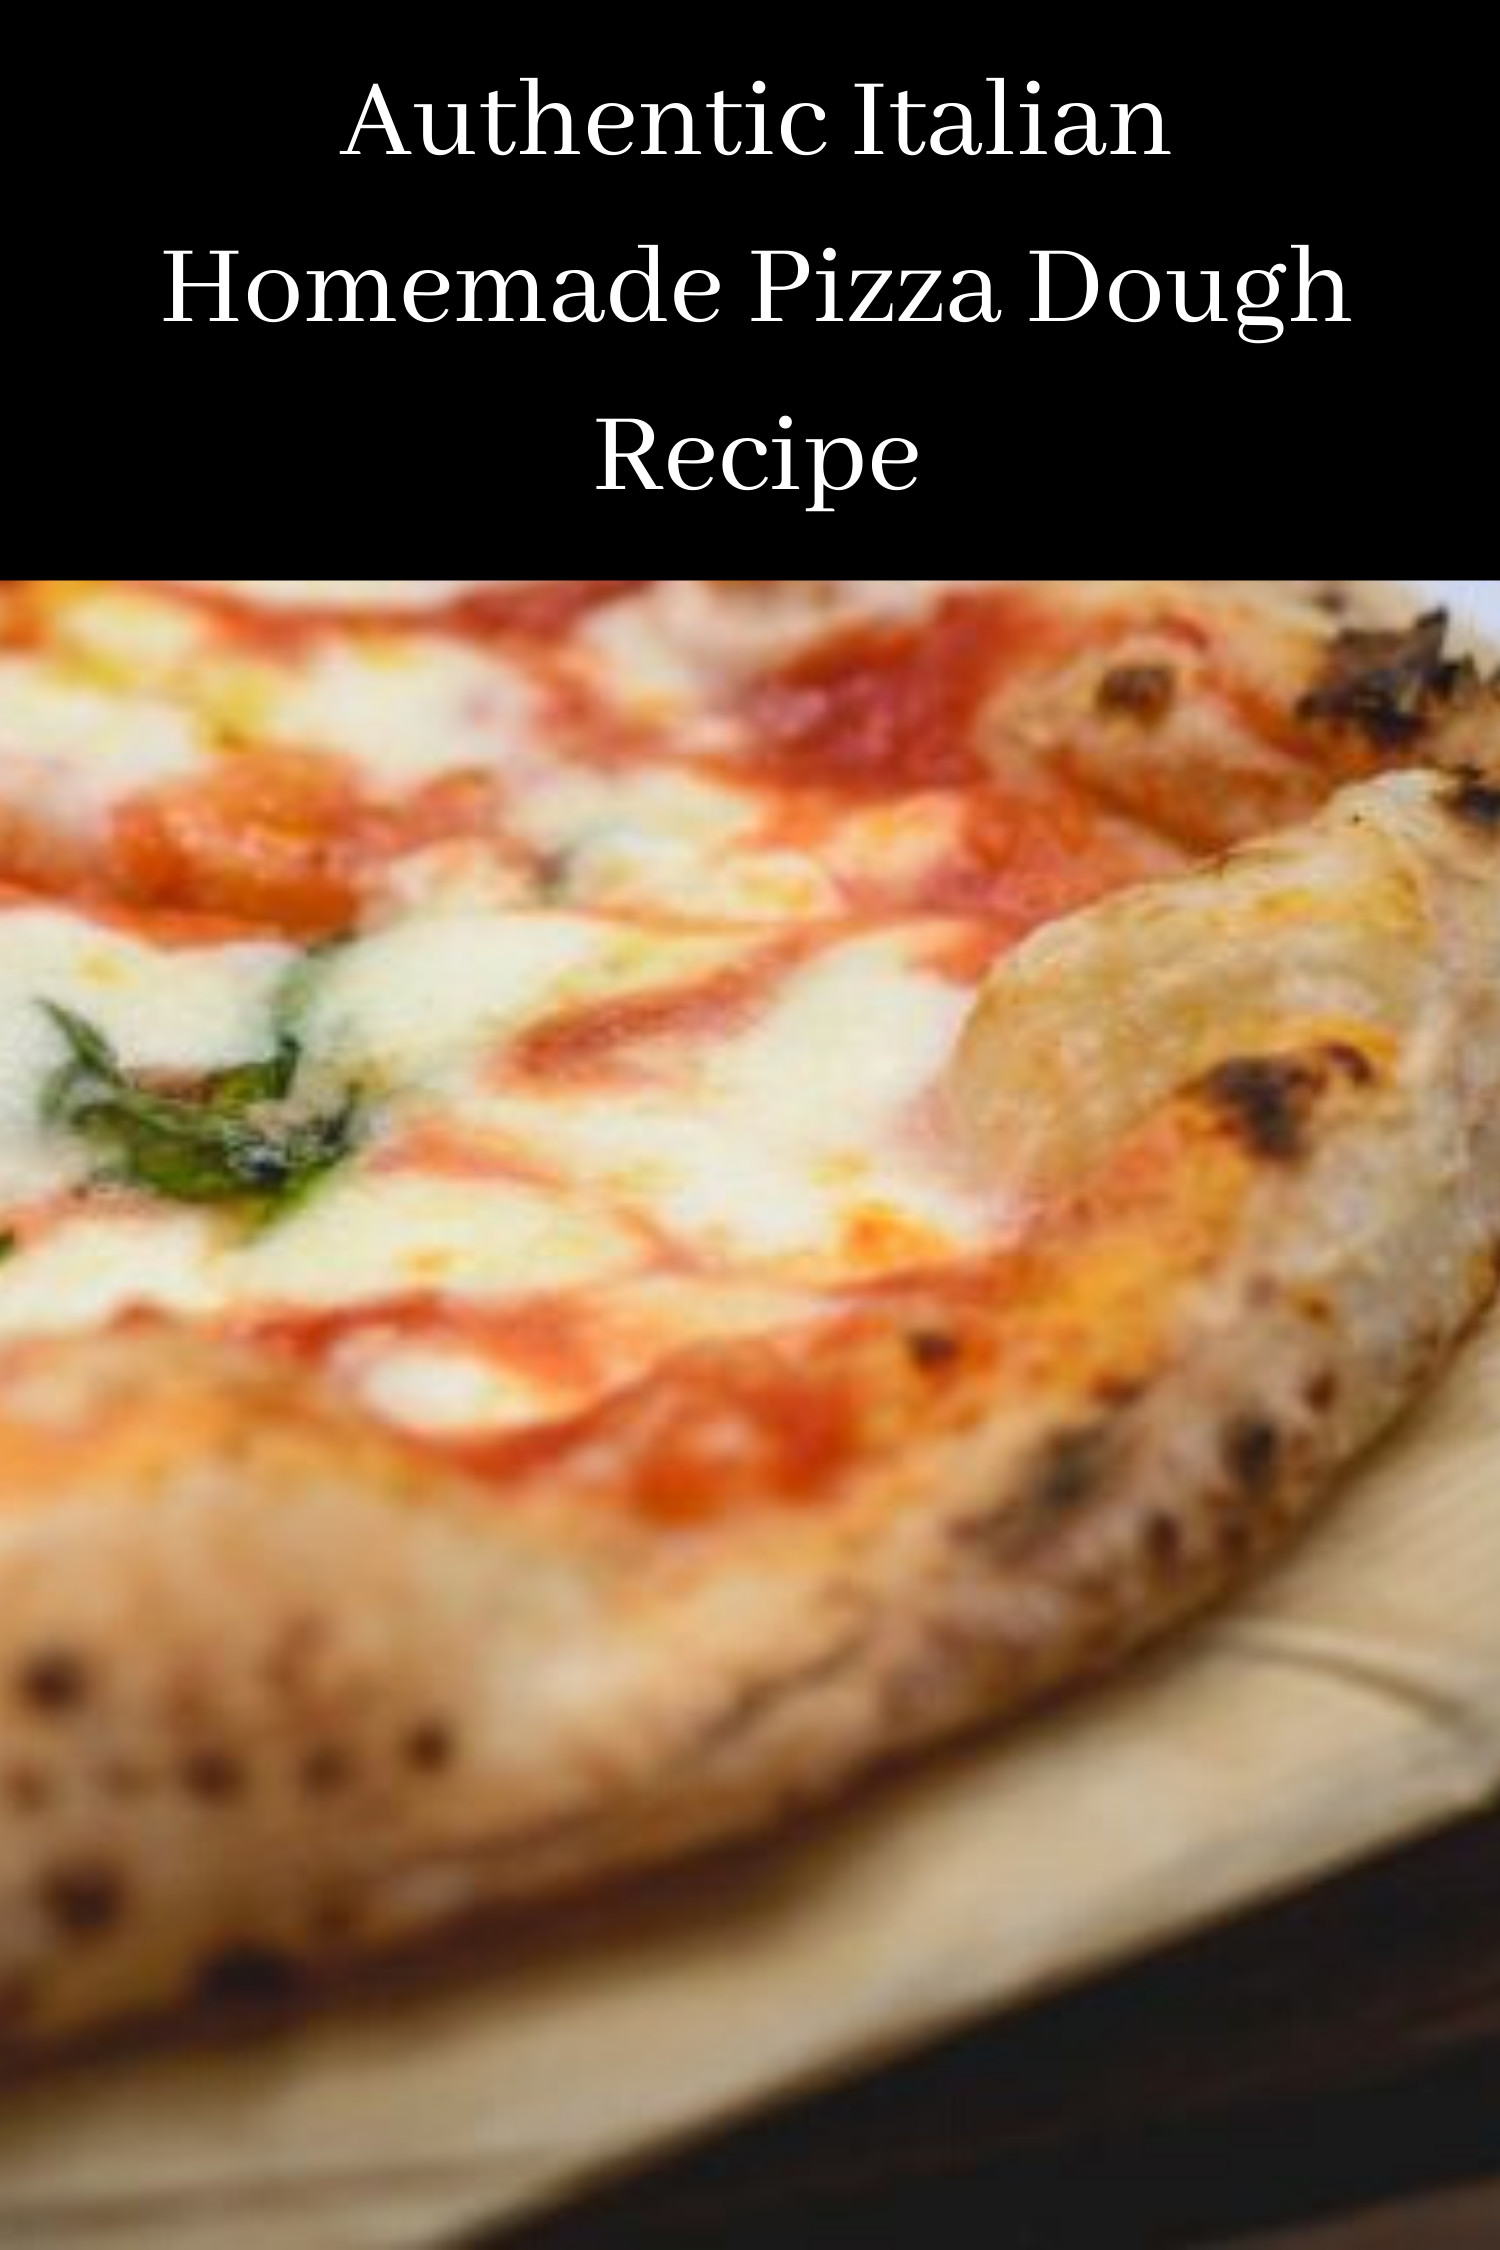 Authentic Italian Pizza Dough Recipe
 Authentic Italian Homemade Pizza Dough Recipe